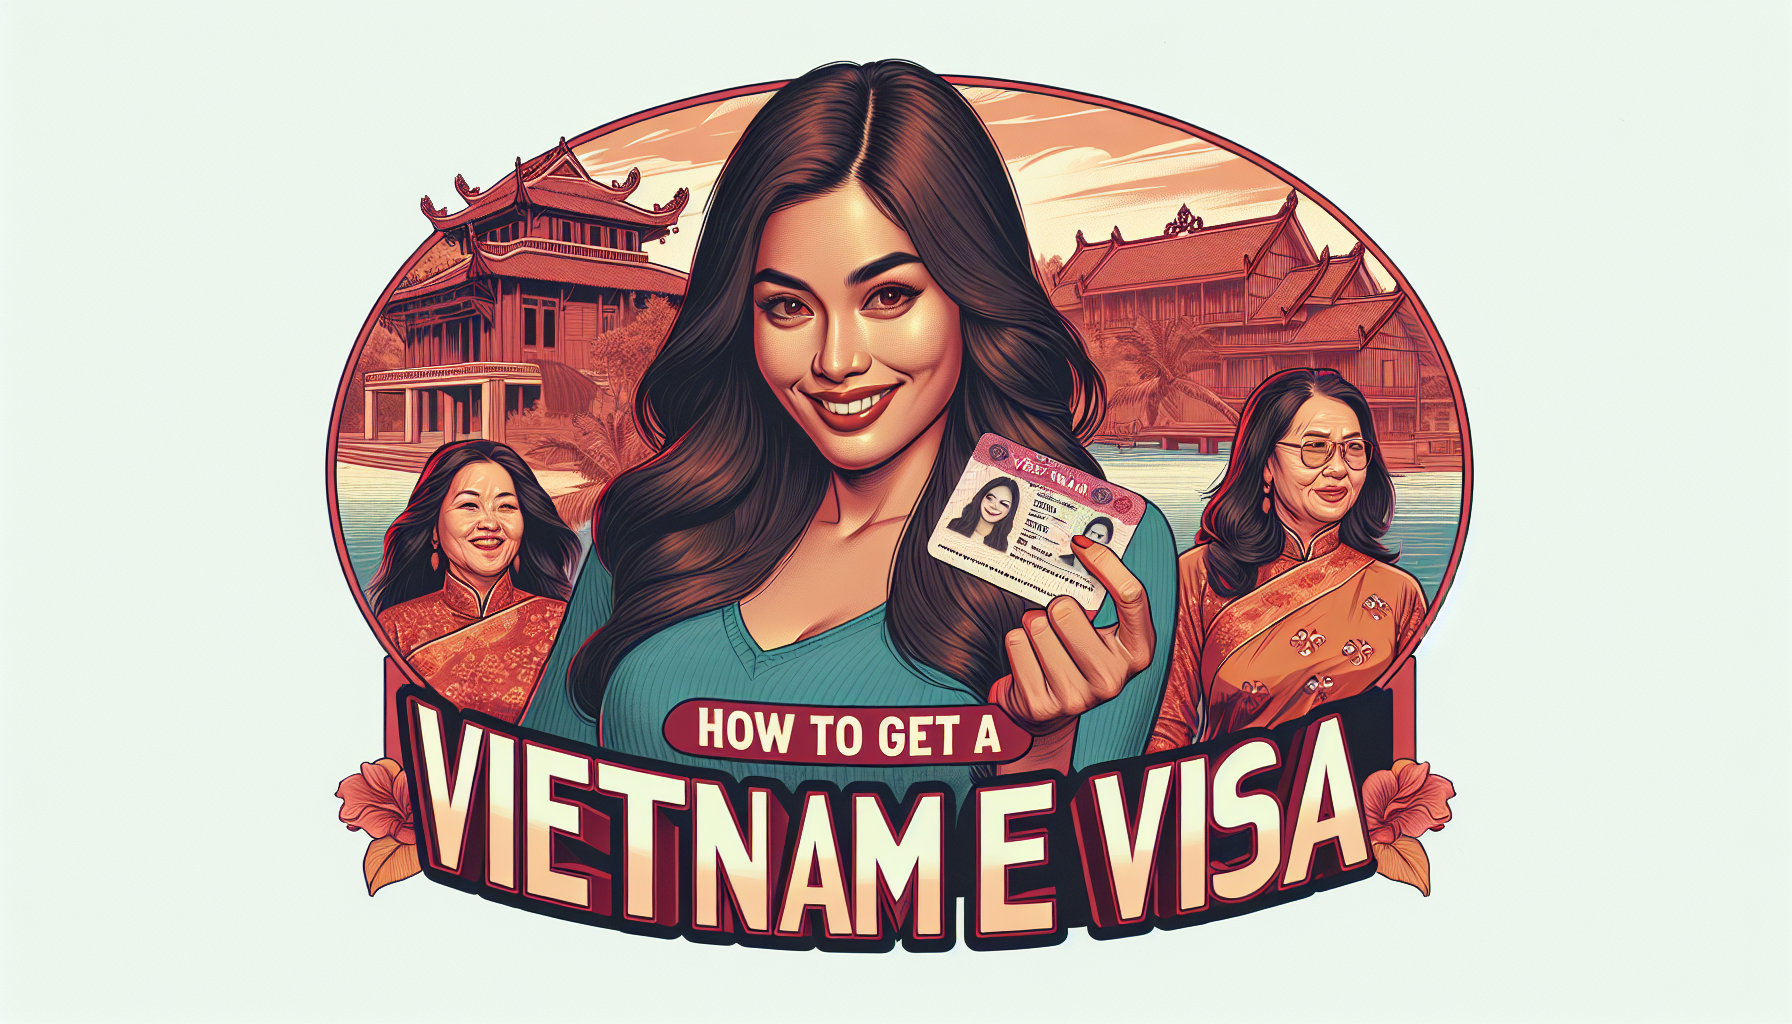 Vietnam Evisa for Citizens from Bangladesh